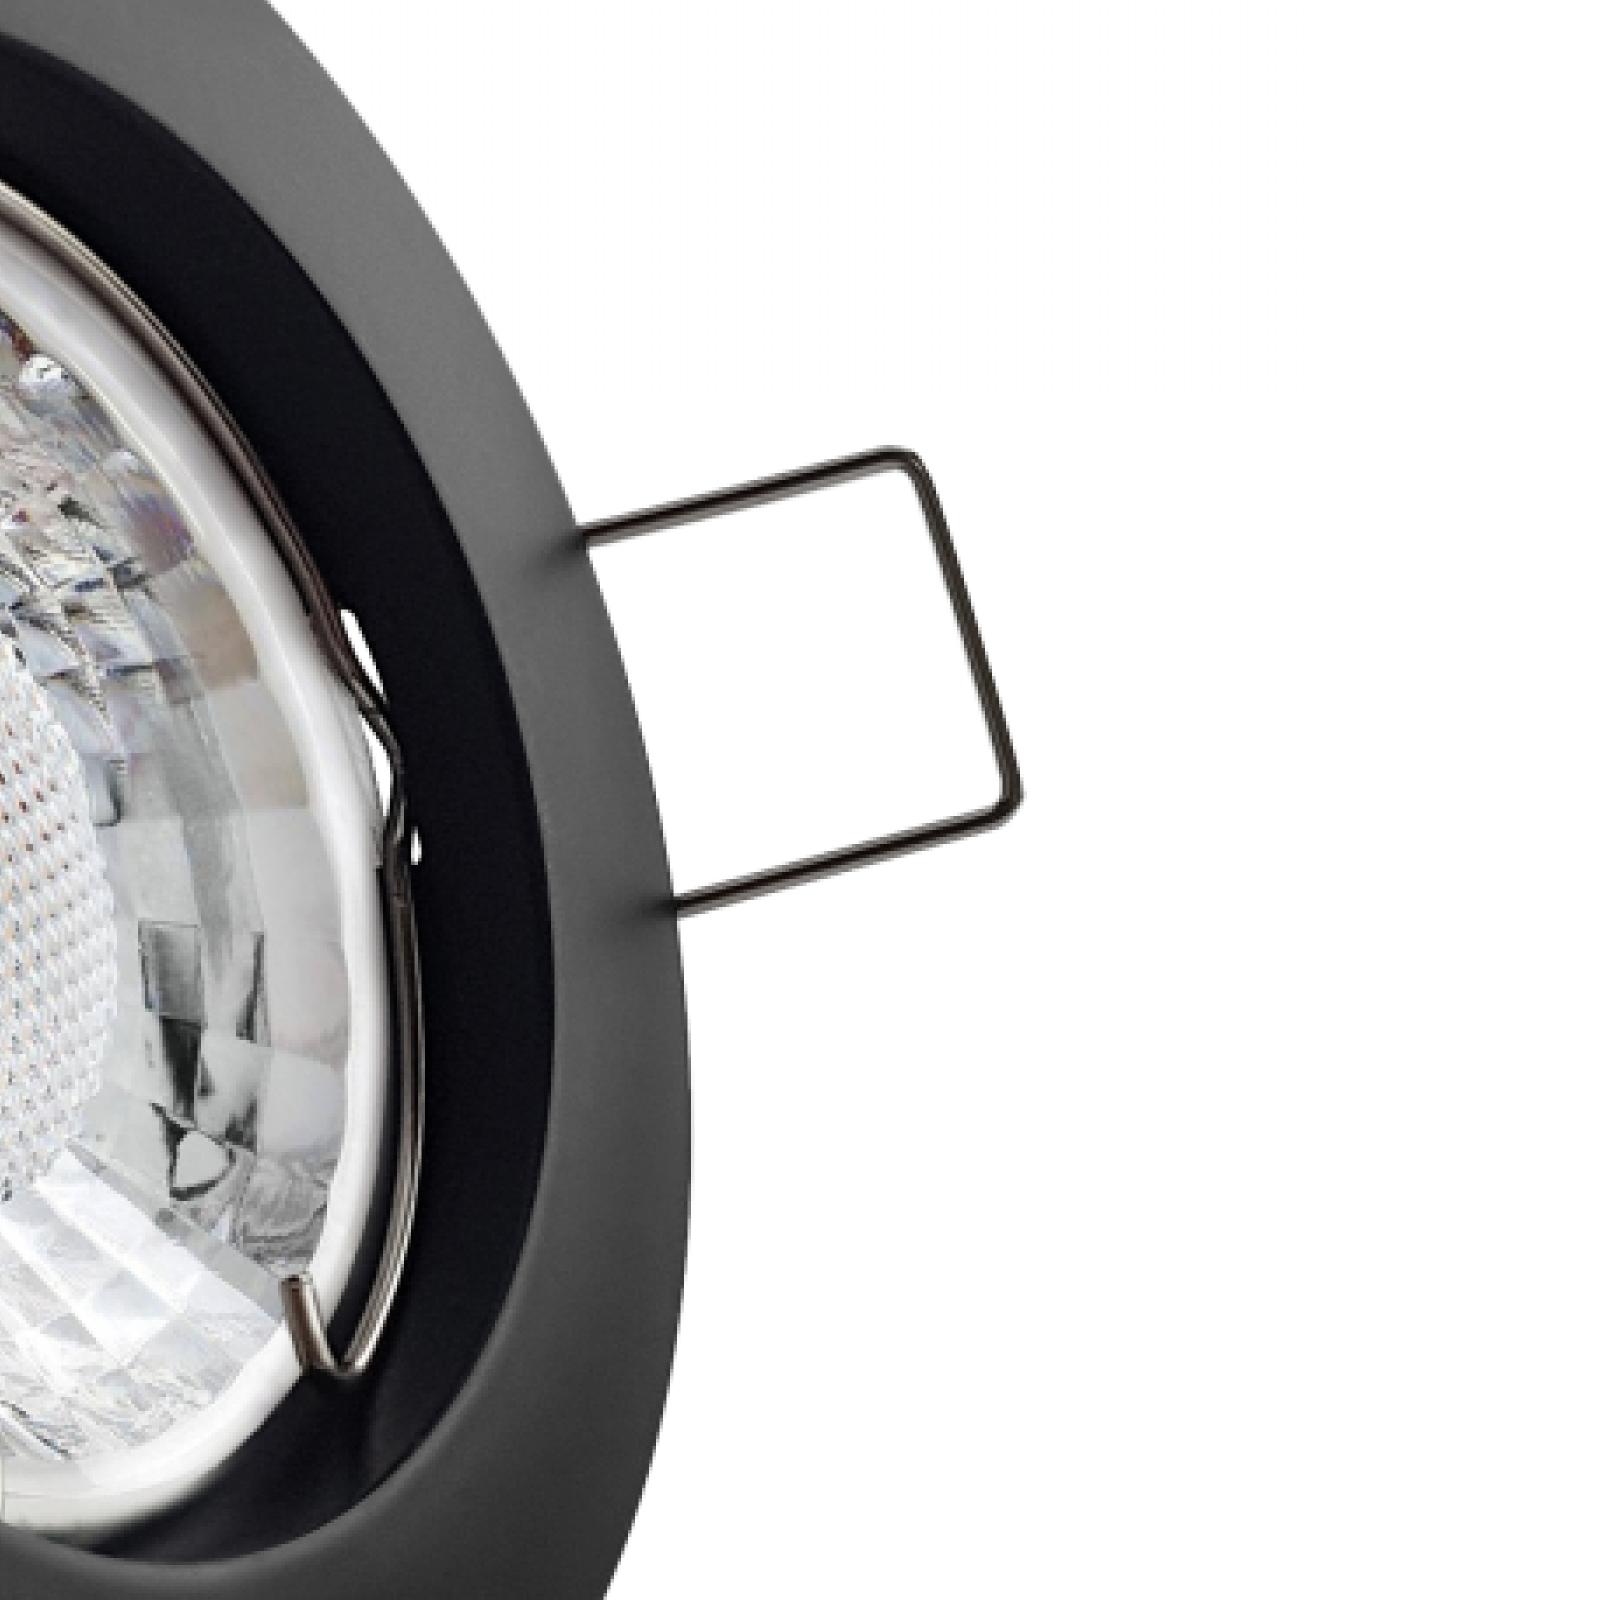 LED Einbaustrahler schwarz | Runder Einbauspot | Lochmaß Ø 60mm - 70mm | geringe Einbautiefe 35mm | Anschlussfertig 